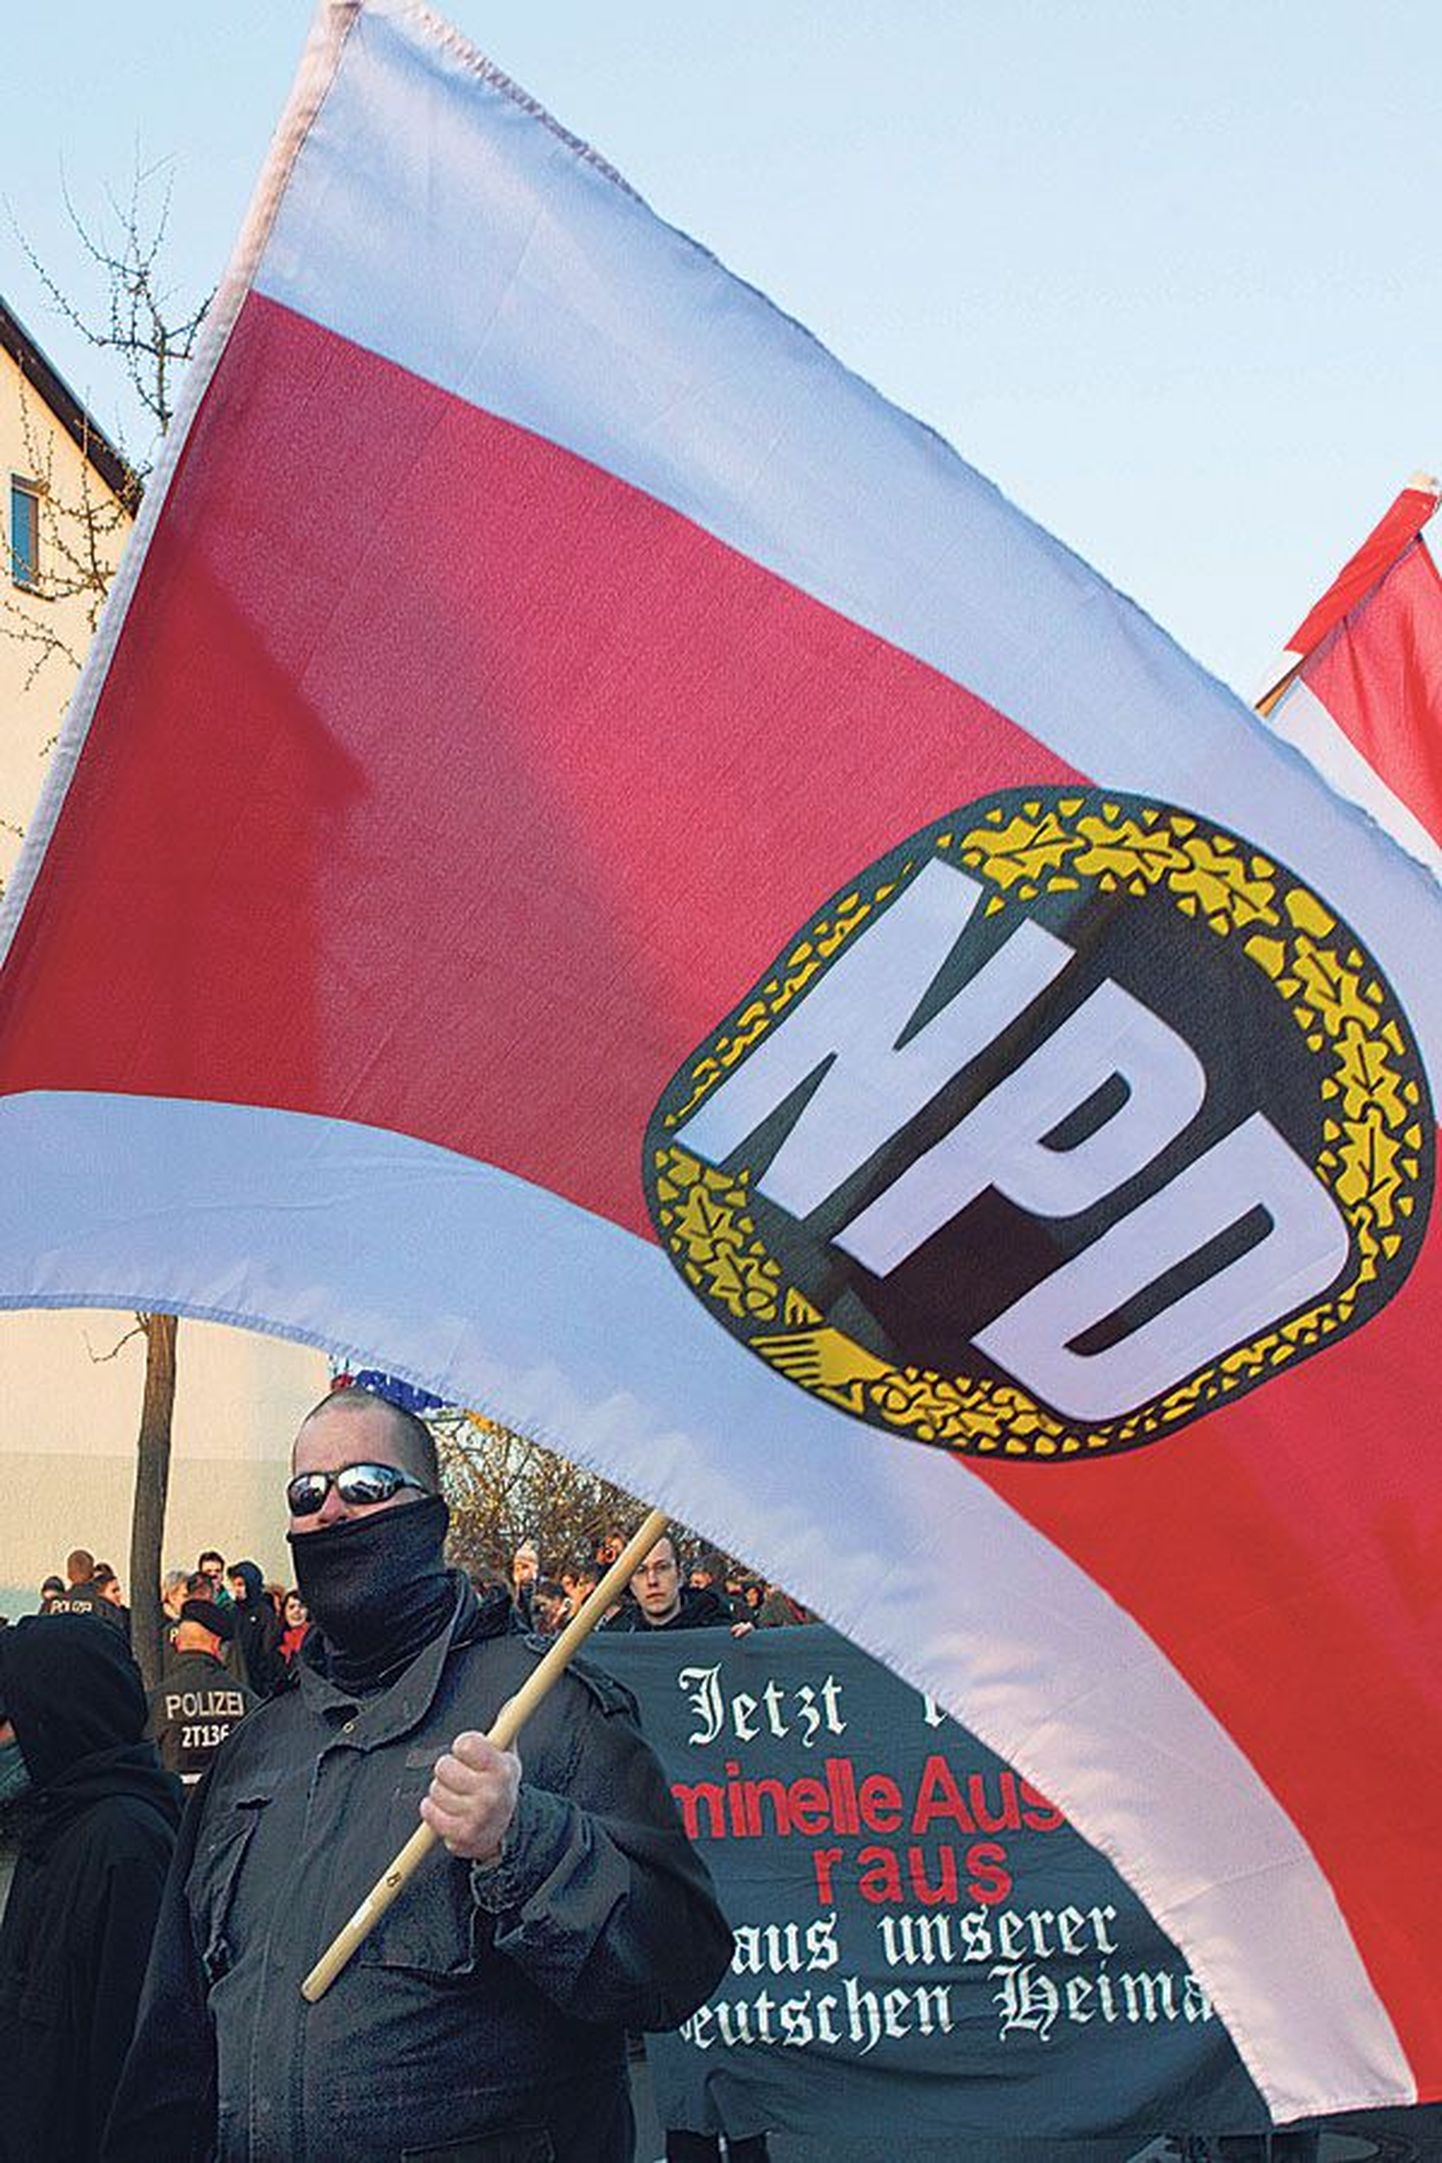 Сторонники Национал-демократической партии Германии (NPD) на демонстрации в Берлине 13 апреля, лозугами которой были отказ от евро и высылка из страны иностранцев-преступников.